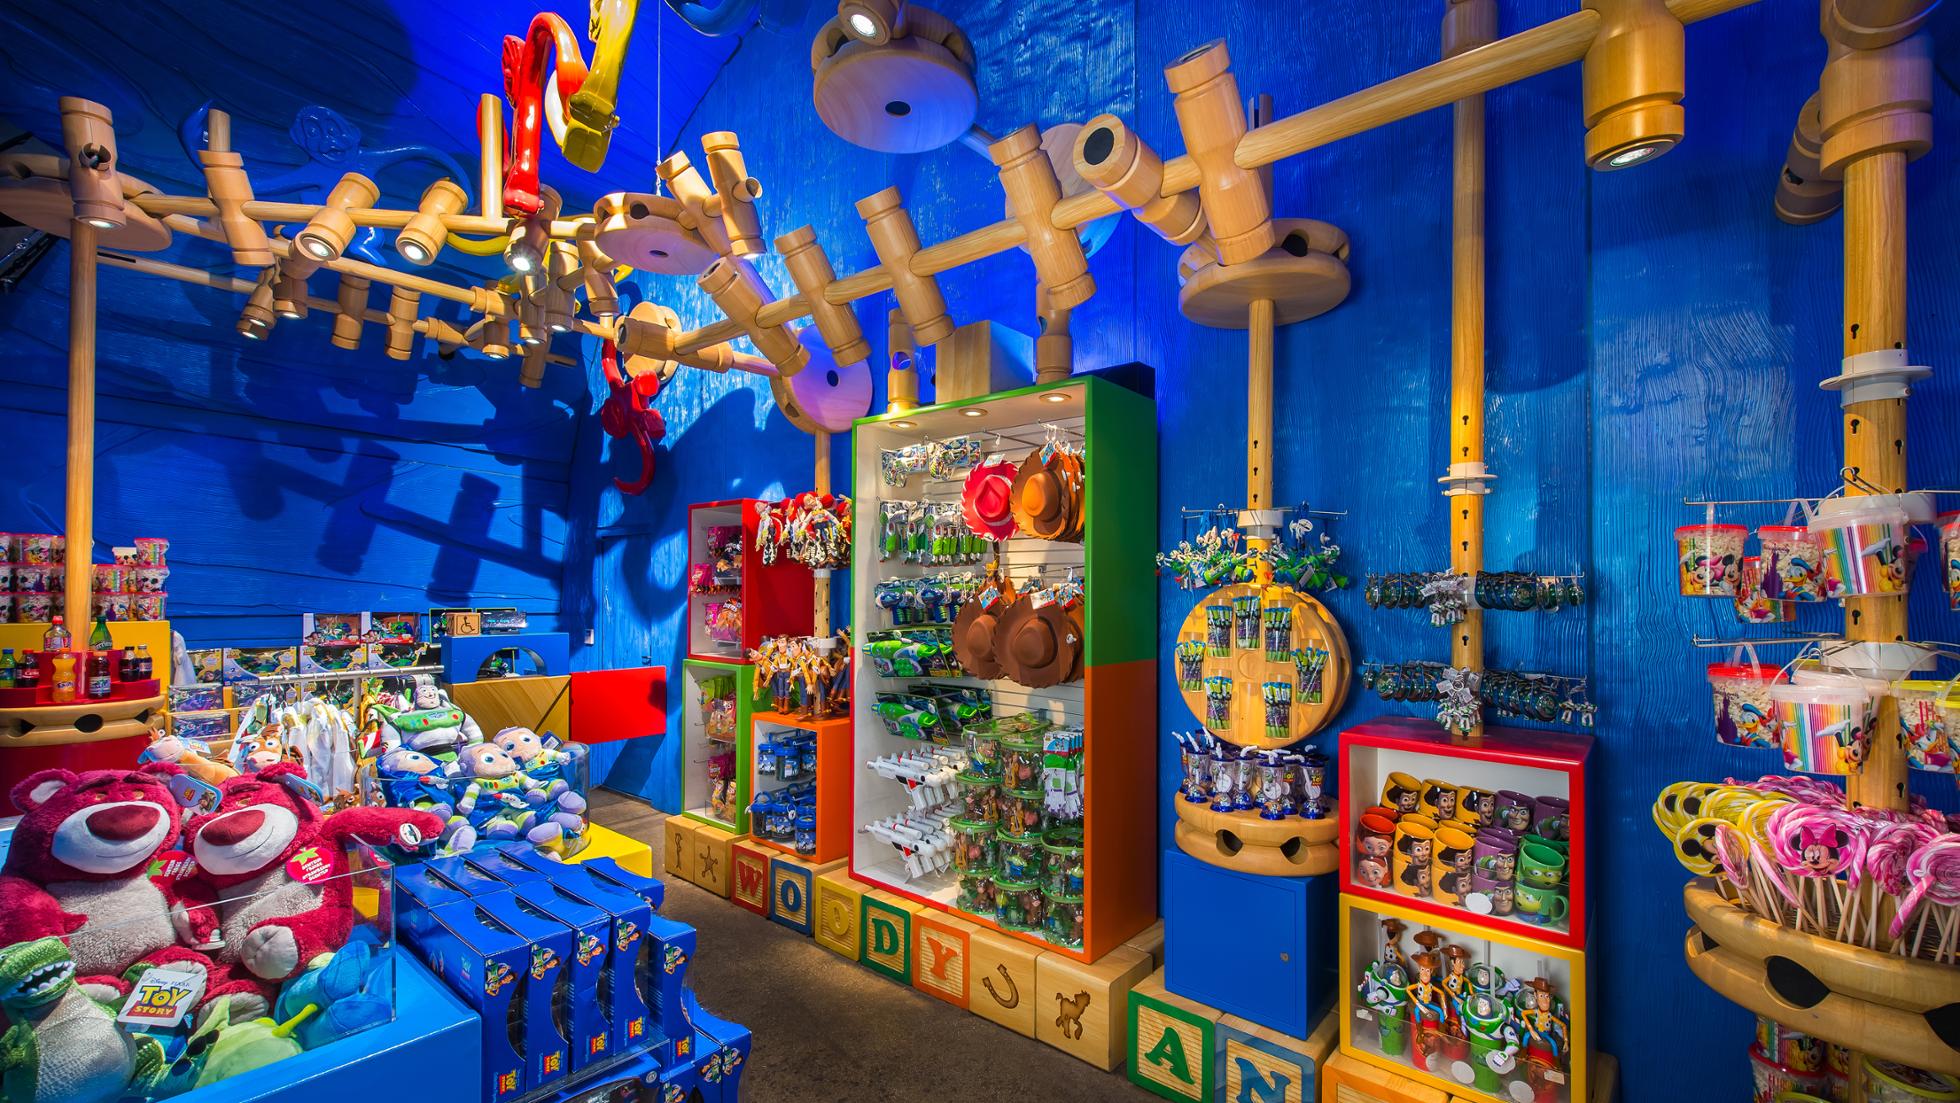 Jouet Figurine Buzz l'éclair Toy Story Disneyland Paris Disney articulé  parlant space ranger espace 32 cm - Jouets/Jouets Toy Story - La Boutique  Disney